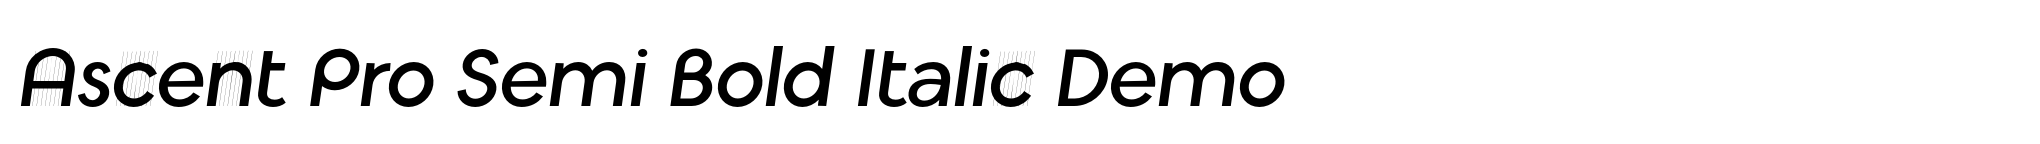 Ascent Pro Semi Bold Italic Demo image